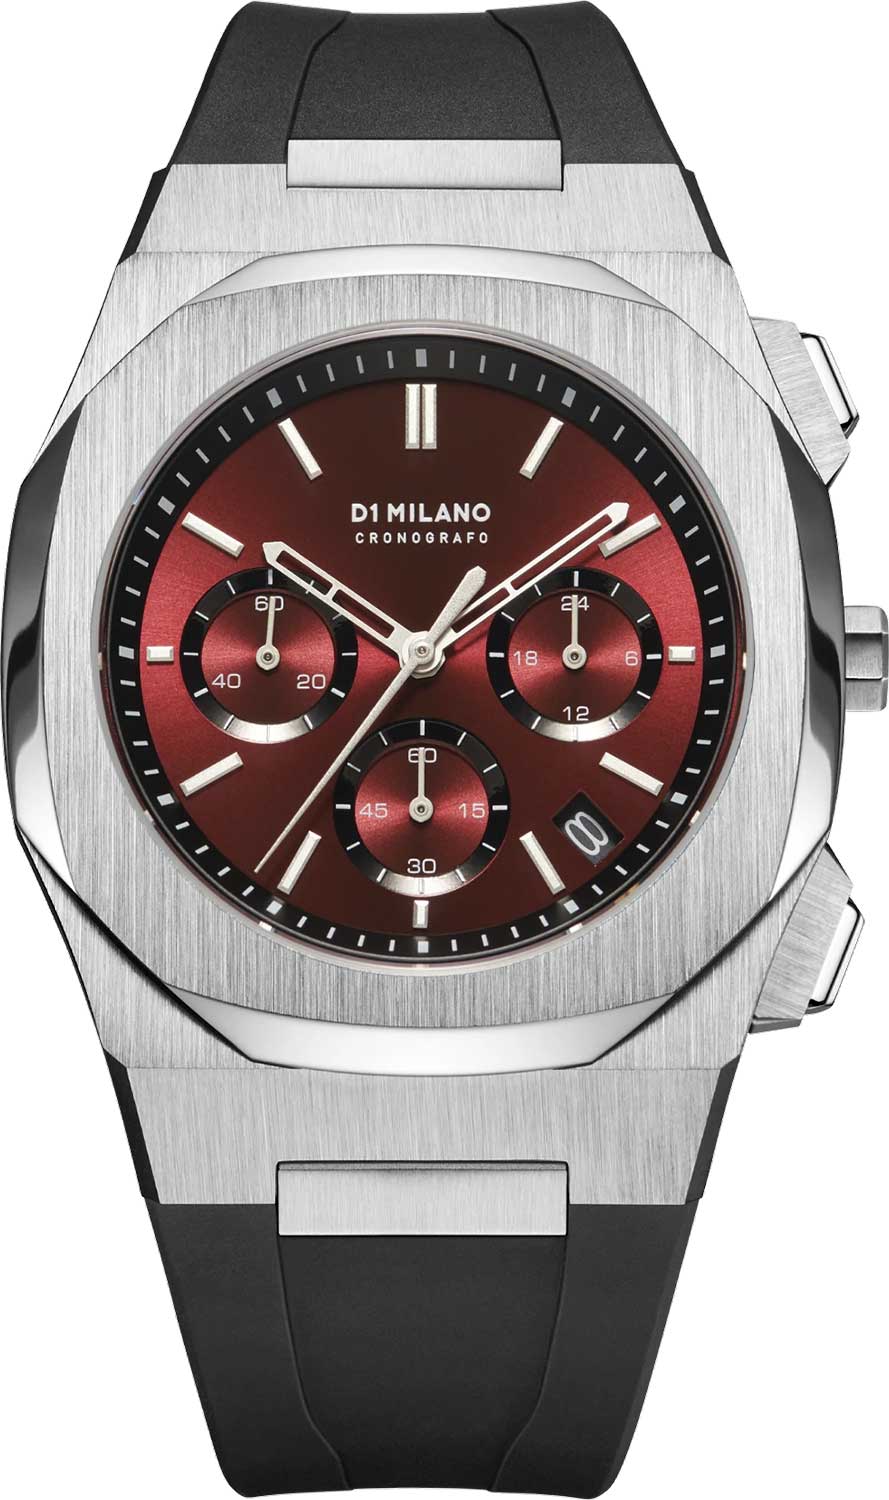 Наручные часы D1 Milano CHRJ03 с хронографом